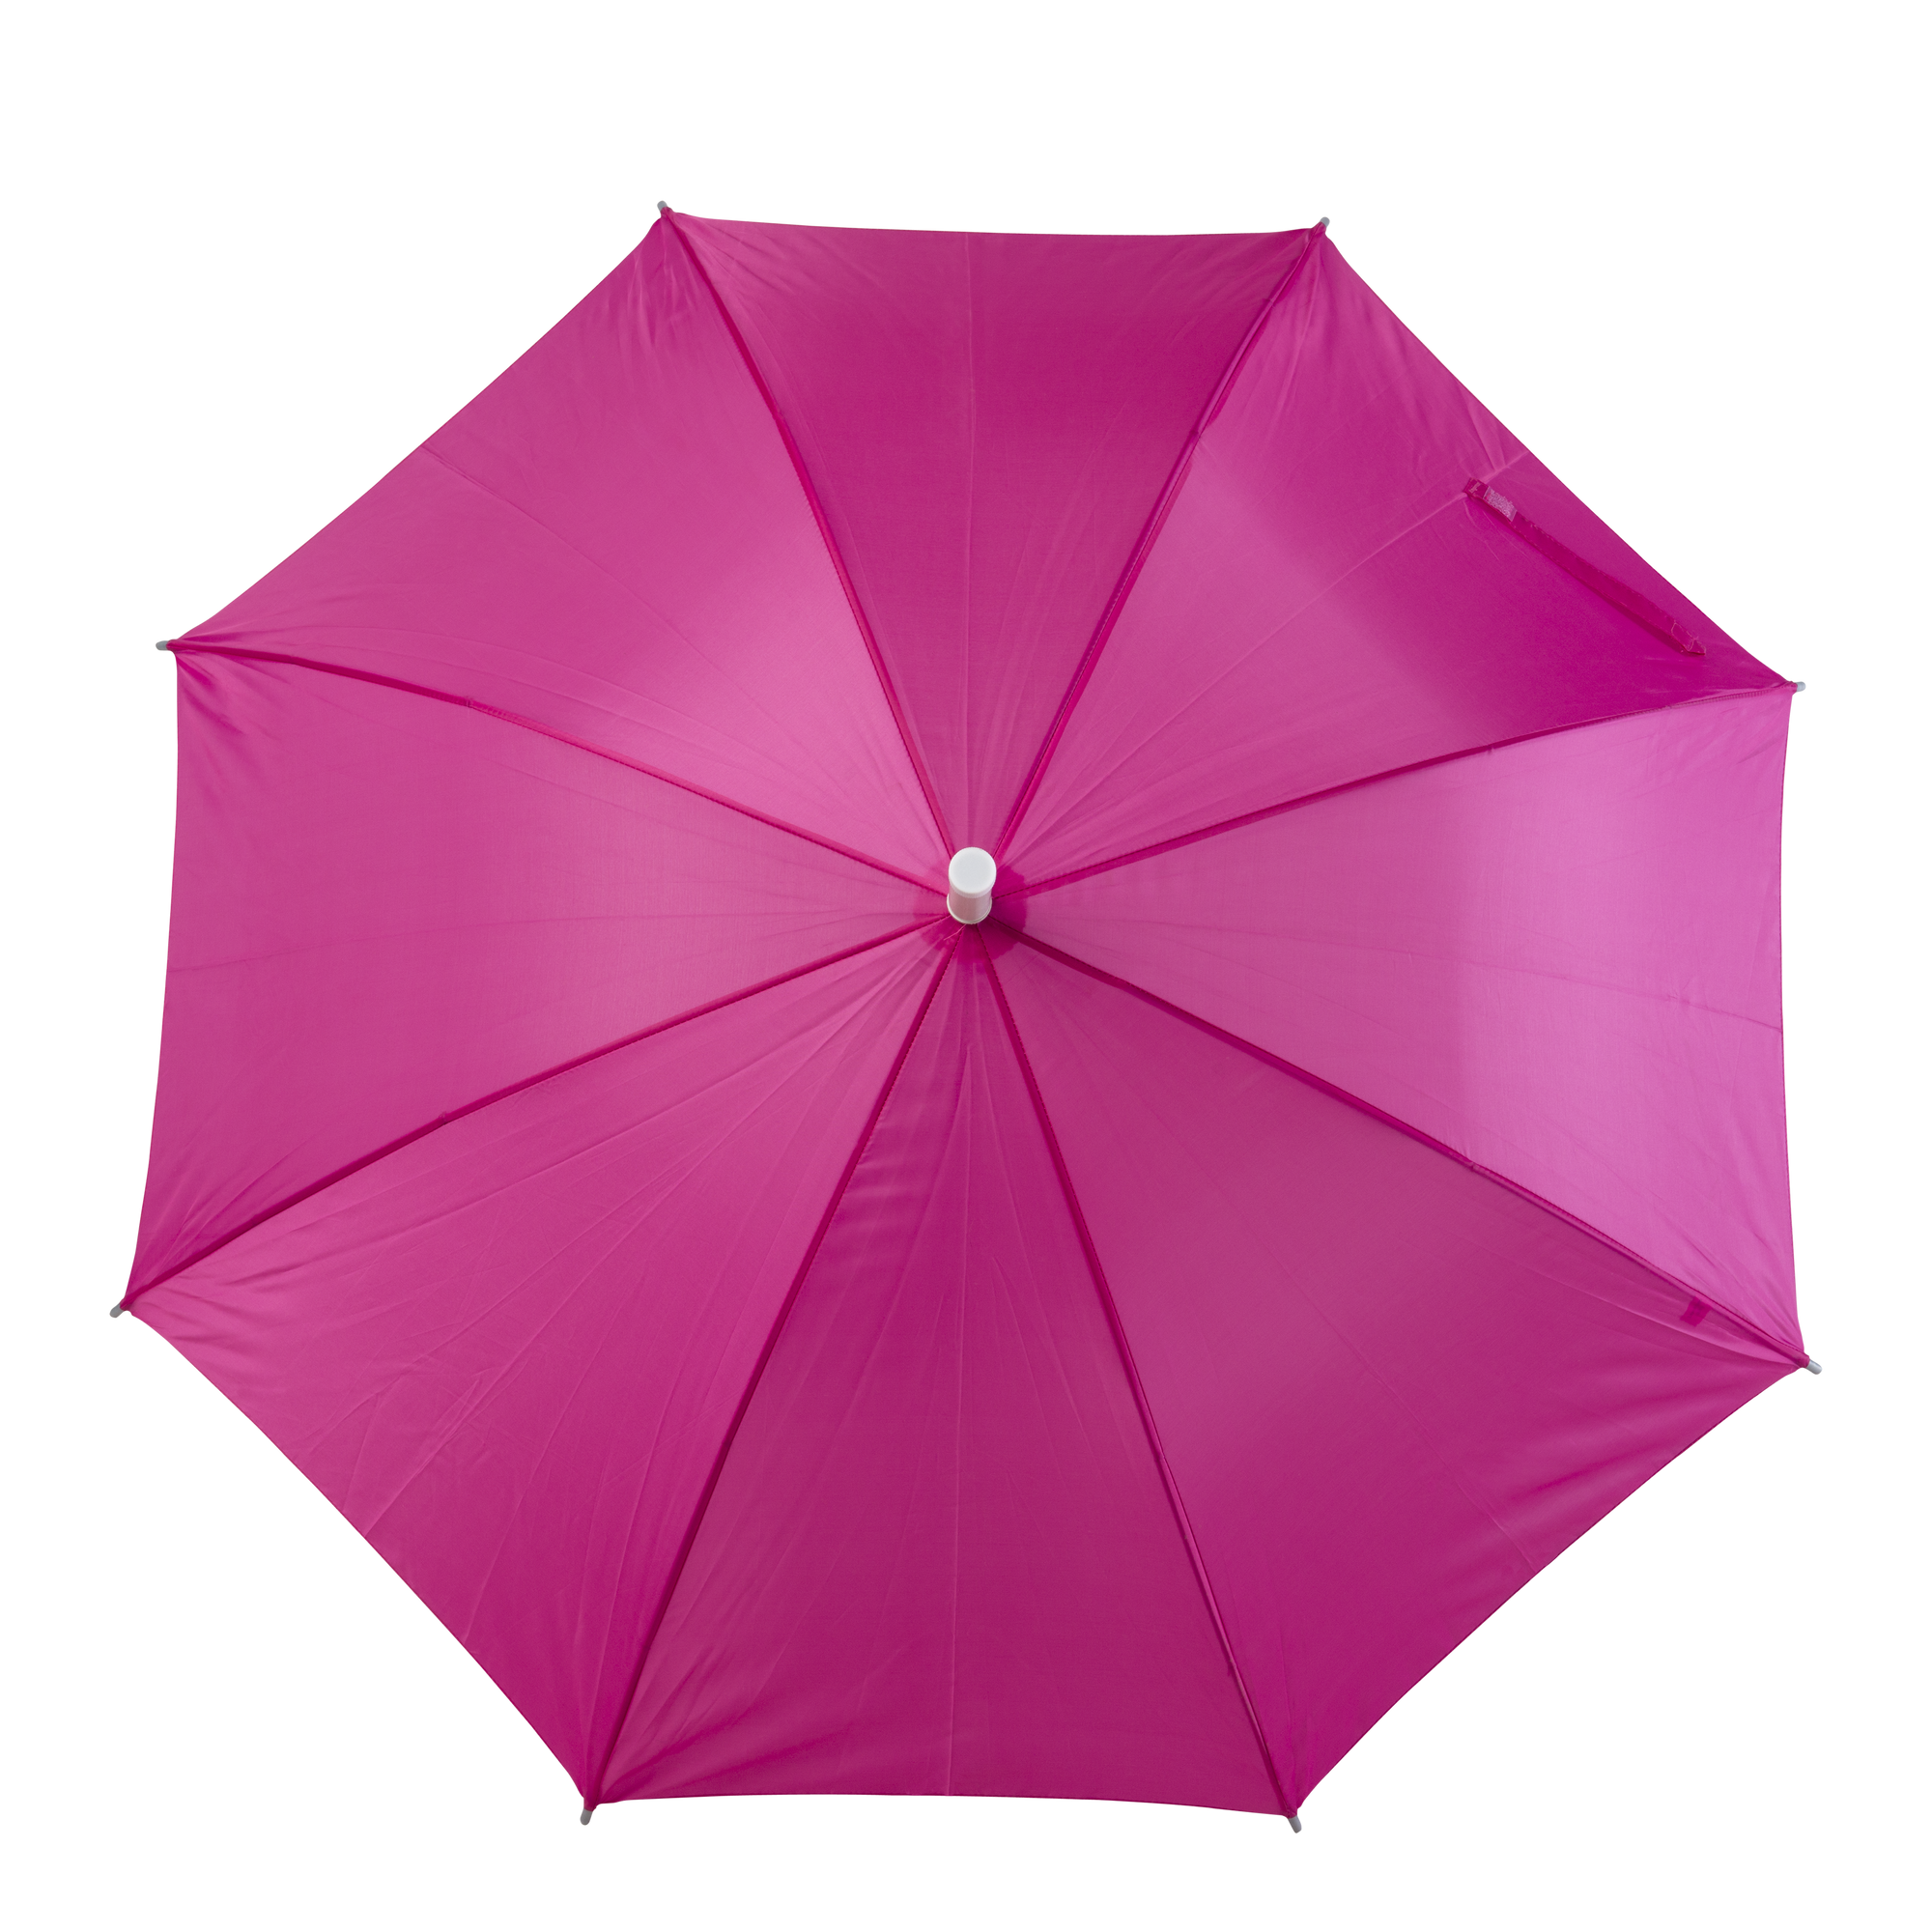 Umbrella rental - pink